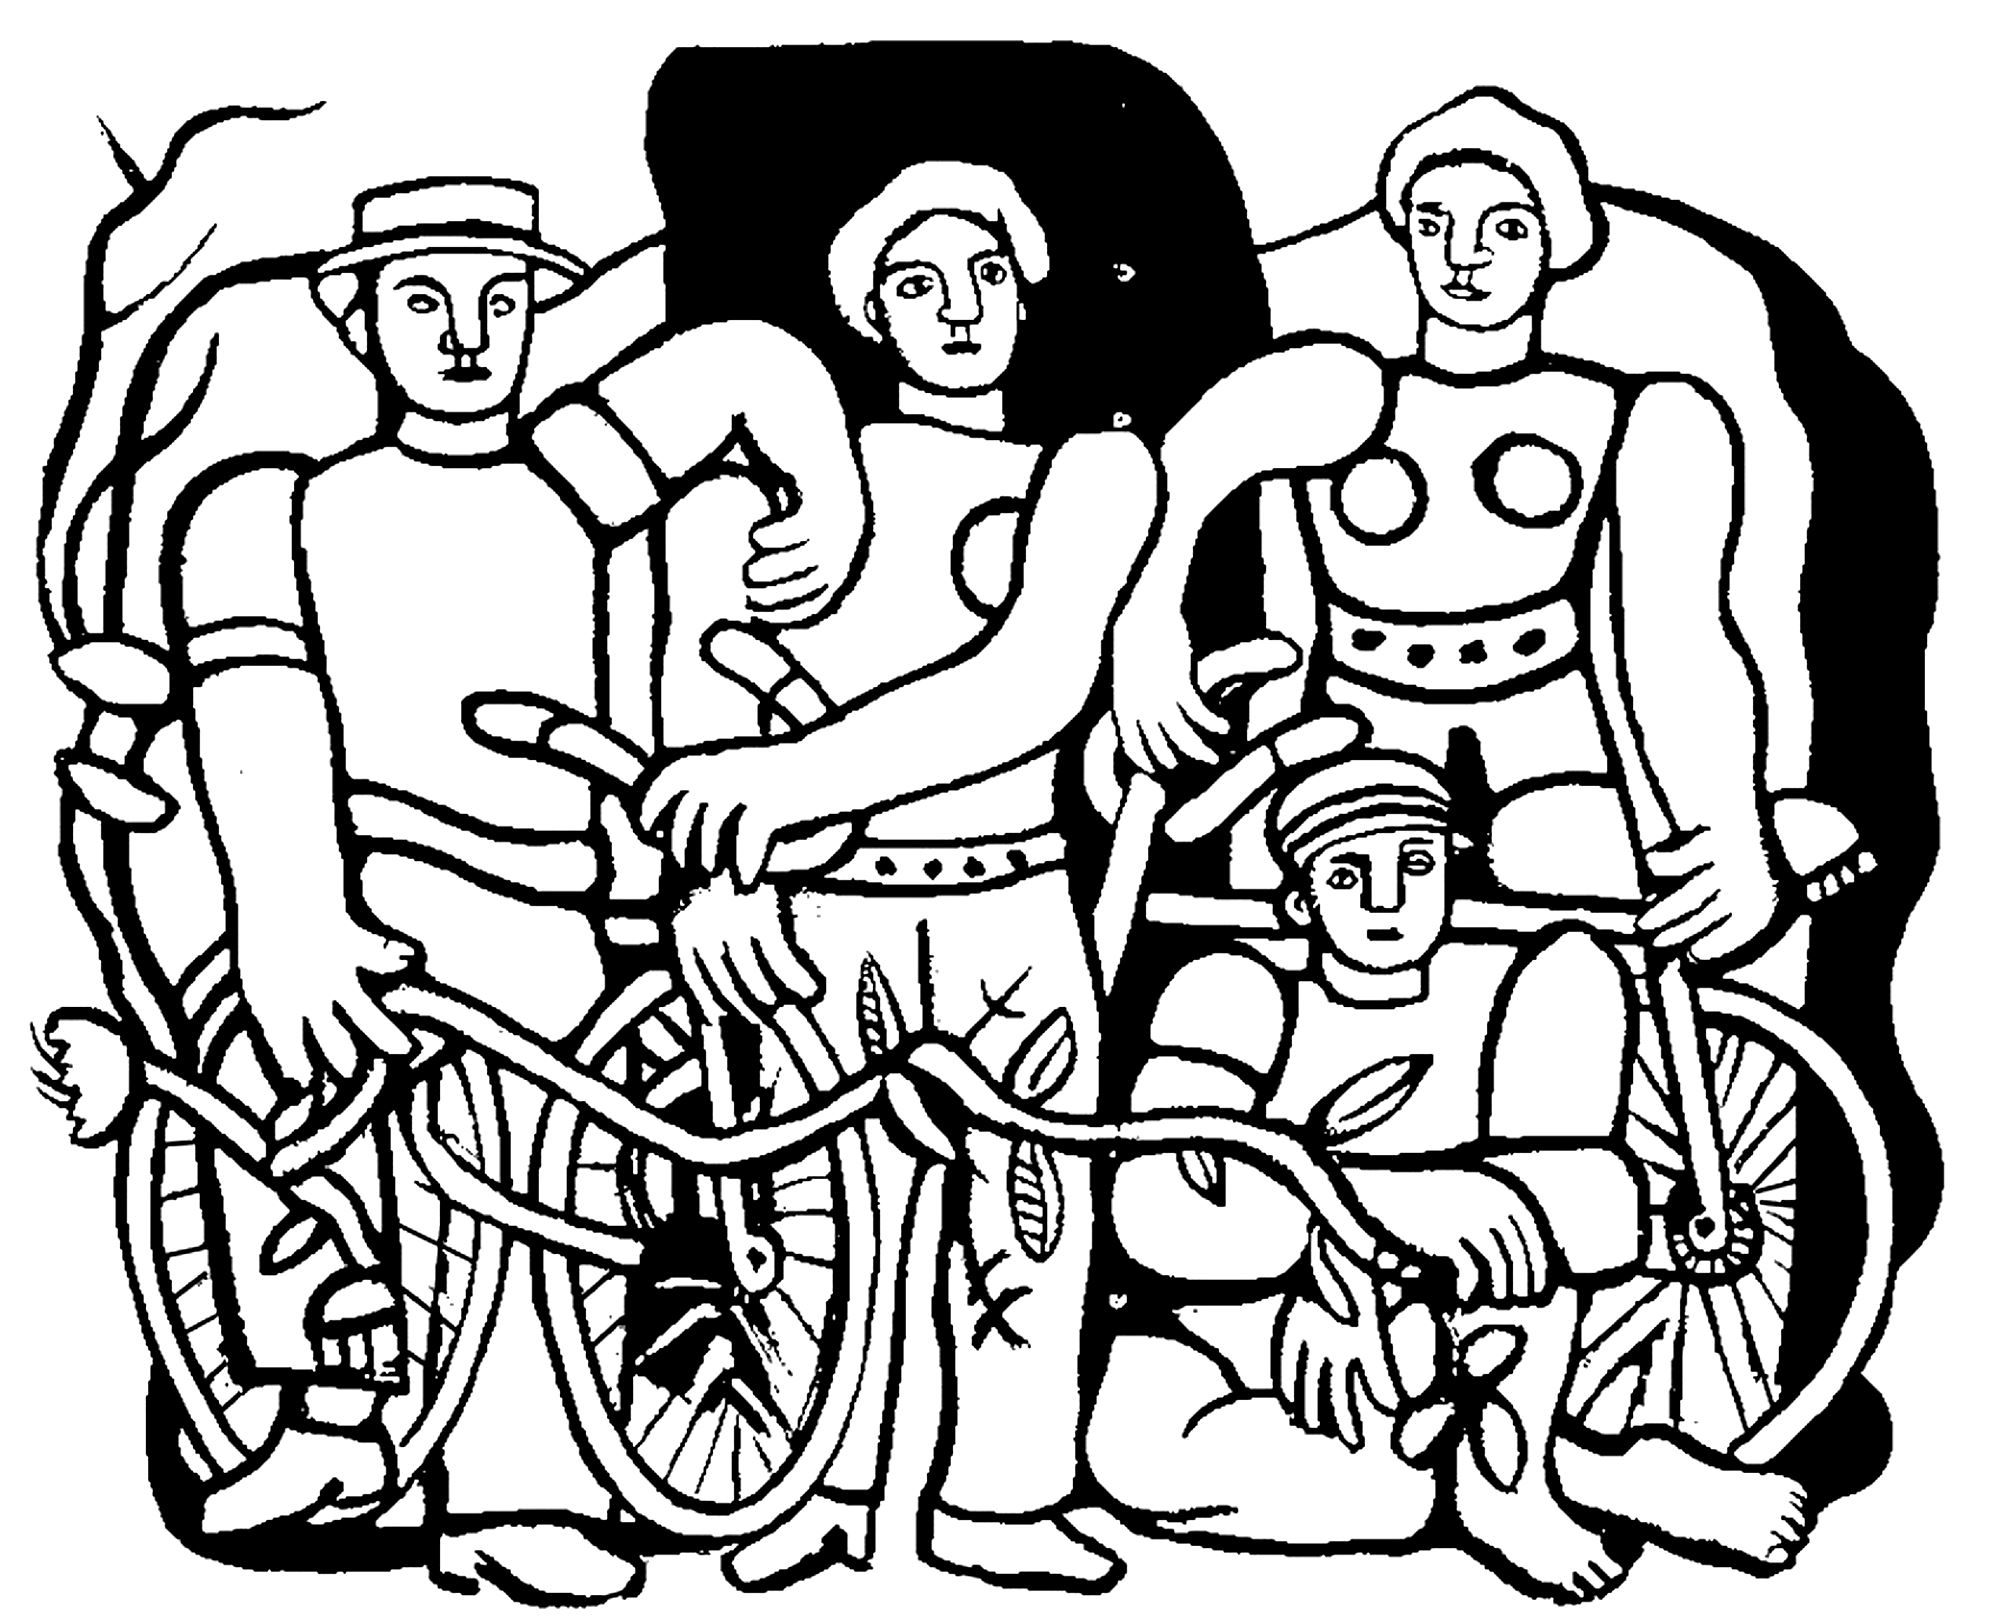 Coloração criada a partir da pintura de Fernand Léger: La belle équipe (1944)